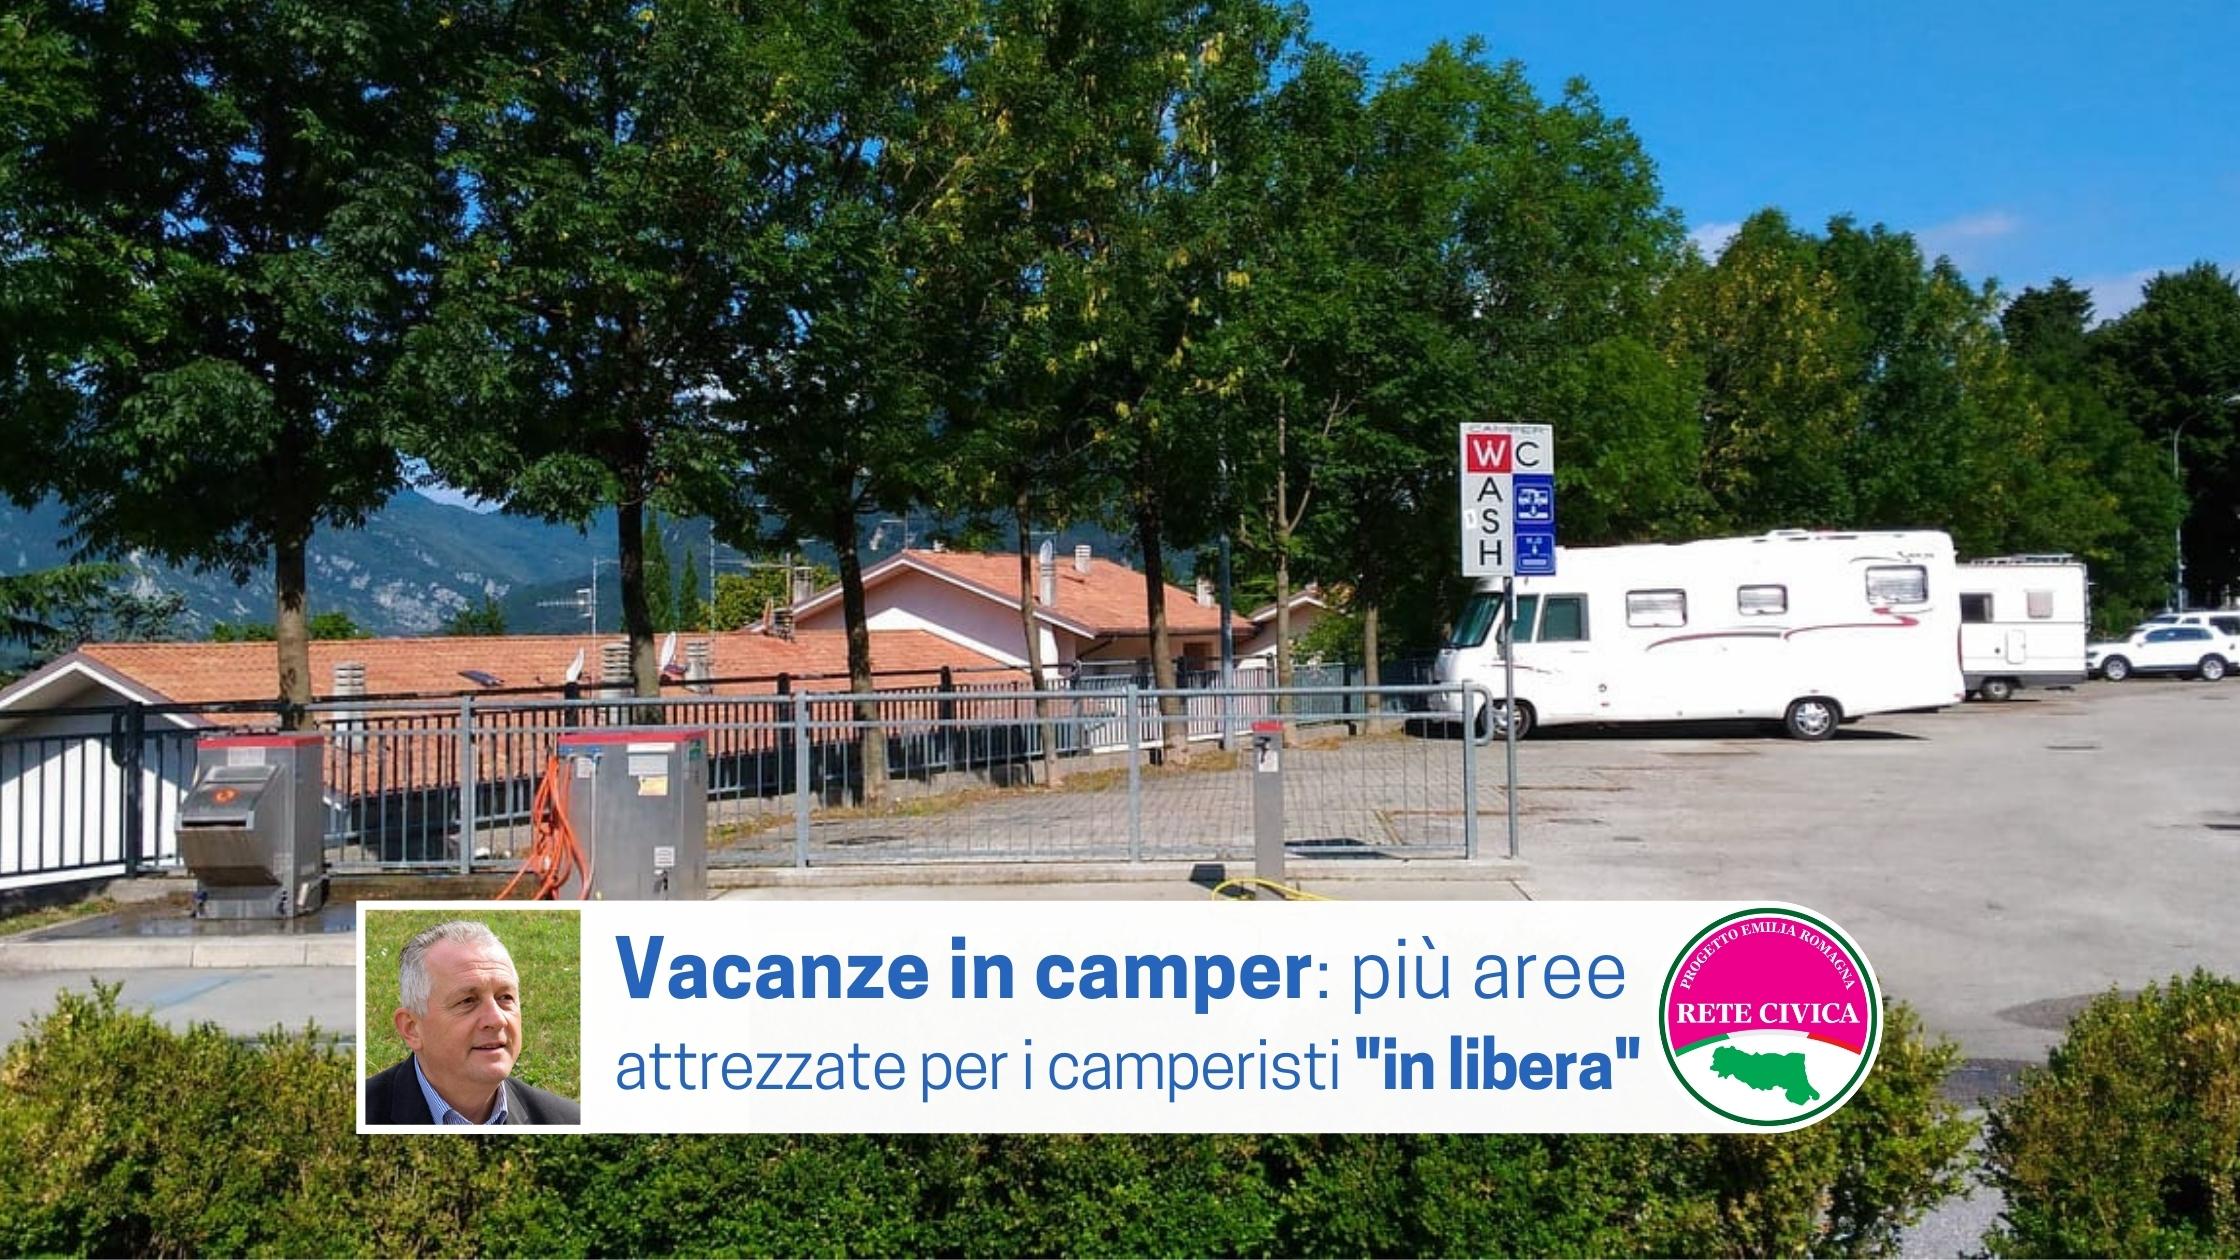 Al momento stai visualizzando VACANZE IN CAMPER: più aree attrezzate per i camperisti “in libera”